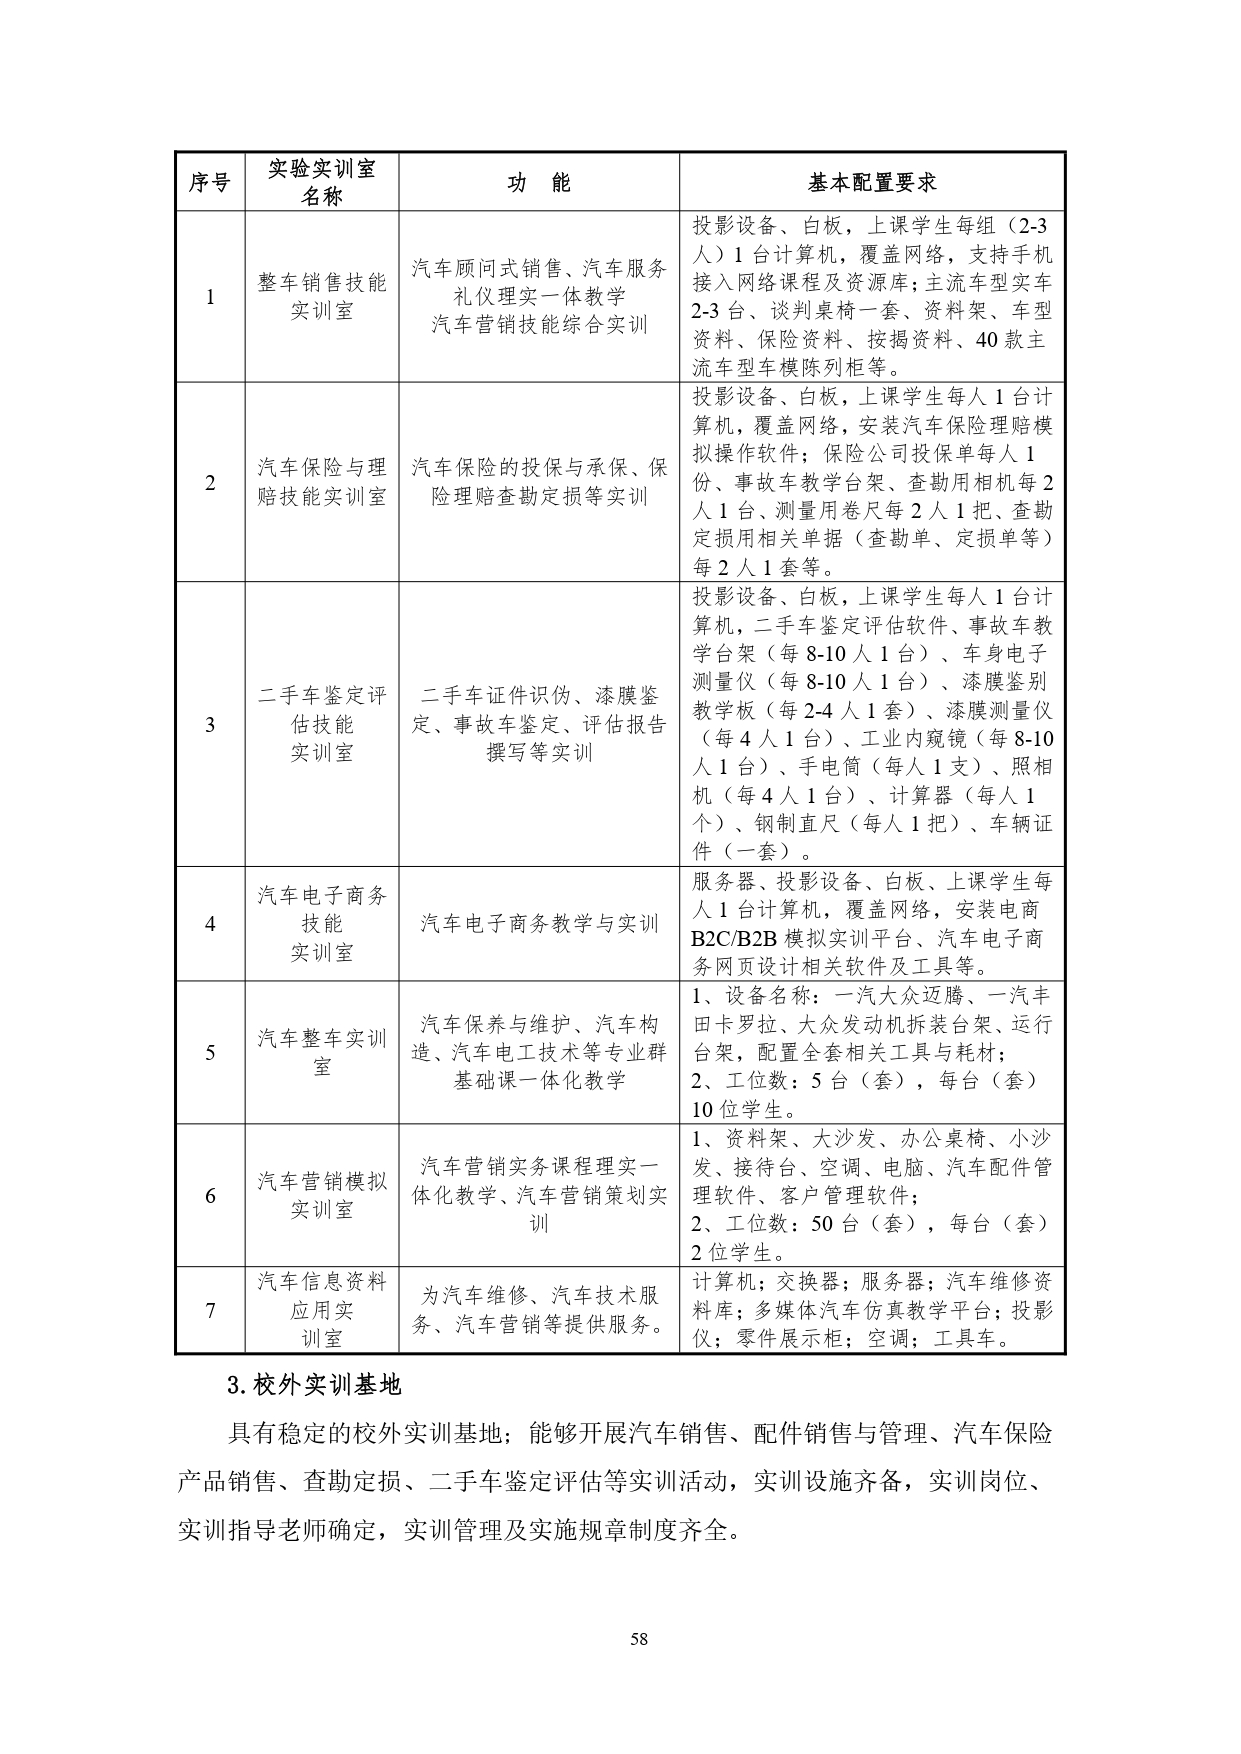 湖南机电职业技术学院2022版汽车技术与营销专业人才培养方案(9月6日定稿）_page-0060.jpg